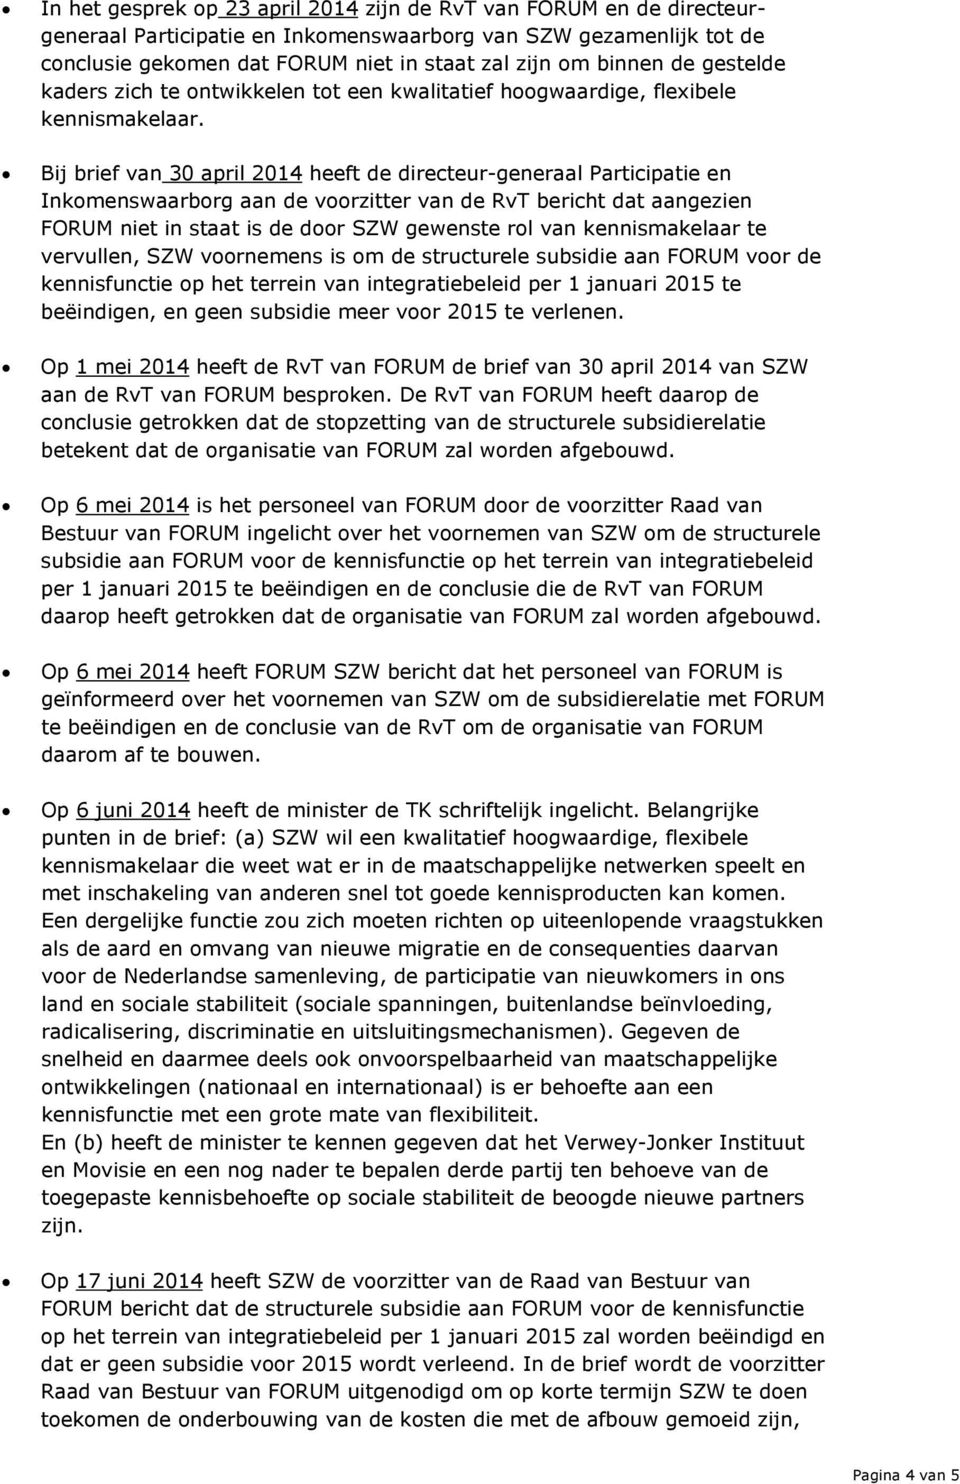 Bij brief van 30 april 2014 heeft de directeur-generaal Participatie en Inkomenswaarborg aan de voorzitter van de RvT bericht dat aangezien FORUM niet in staat is de door SZW gewenste rol van